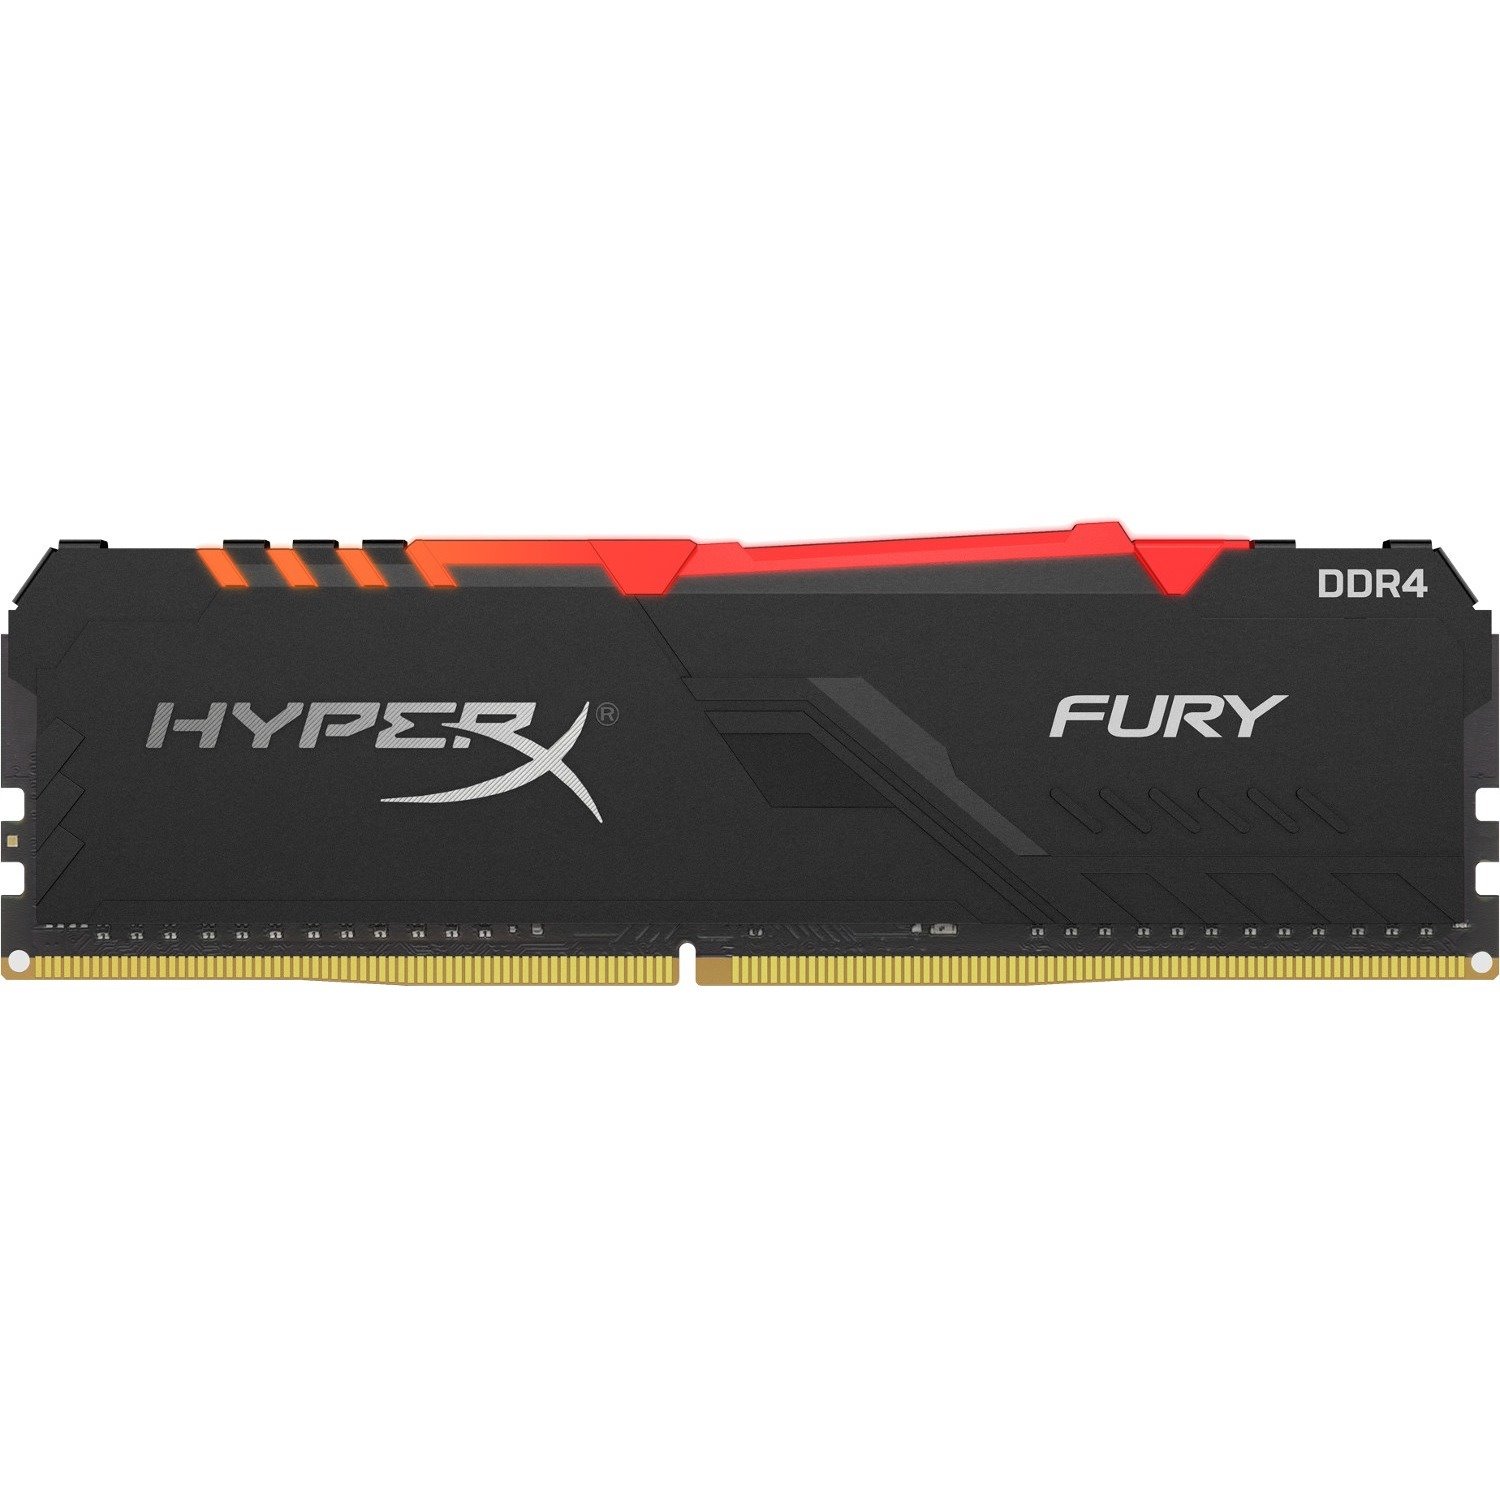 HyperX FURY 16GB DDR4 SDRAM Memory Module